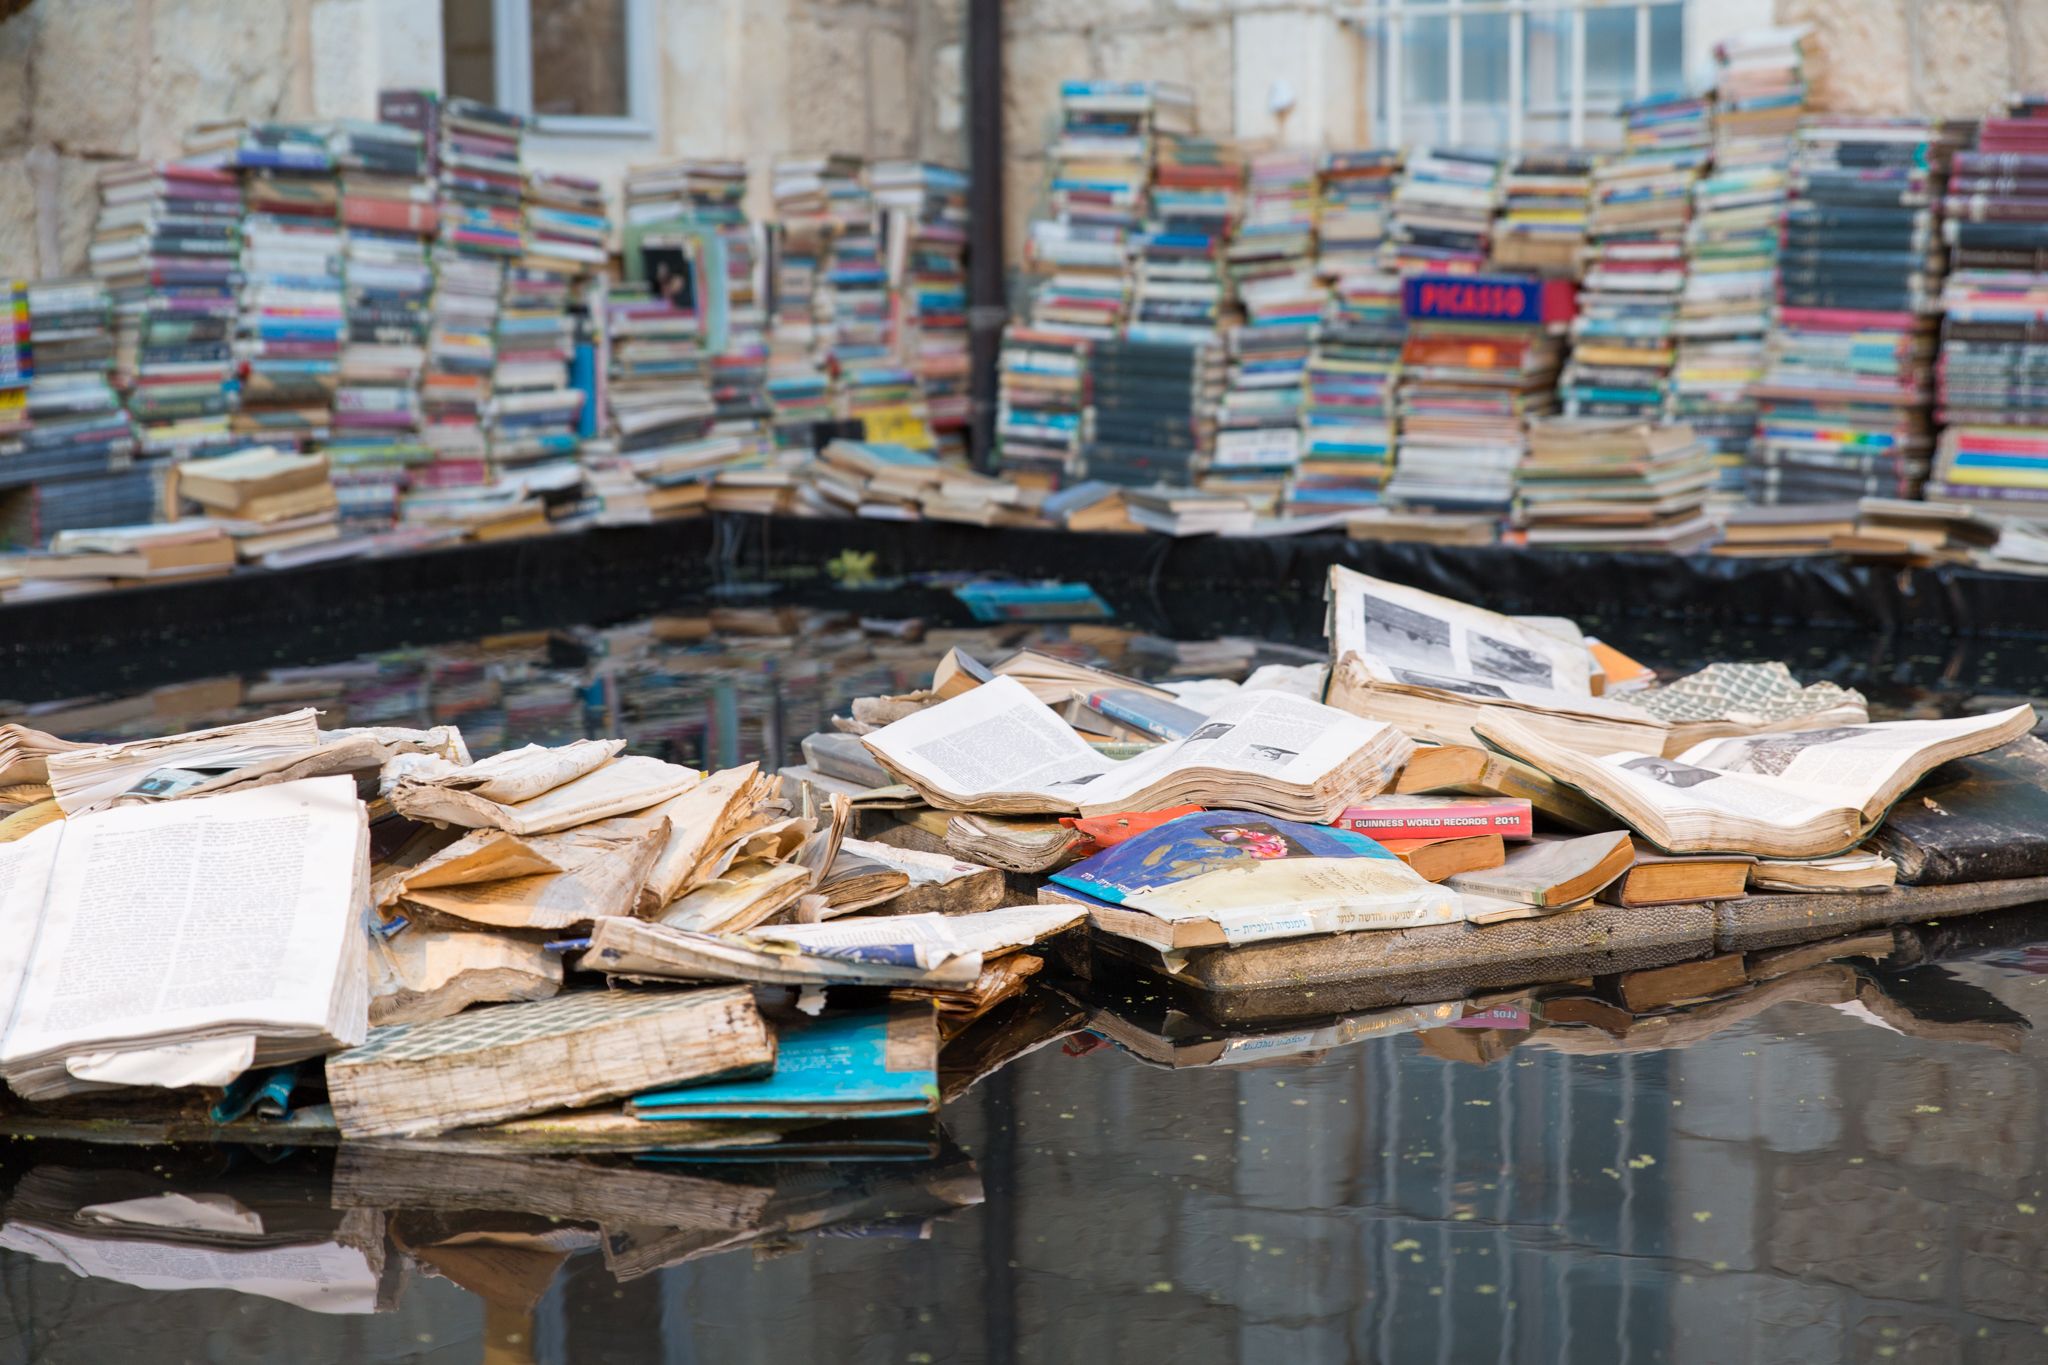  "Water within Books, Books within Water", Geva Avital